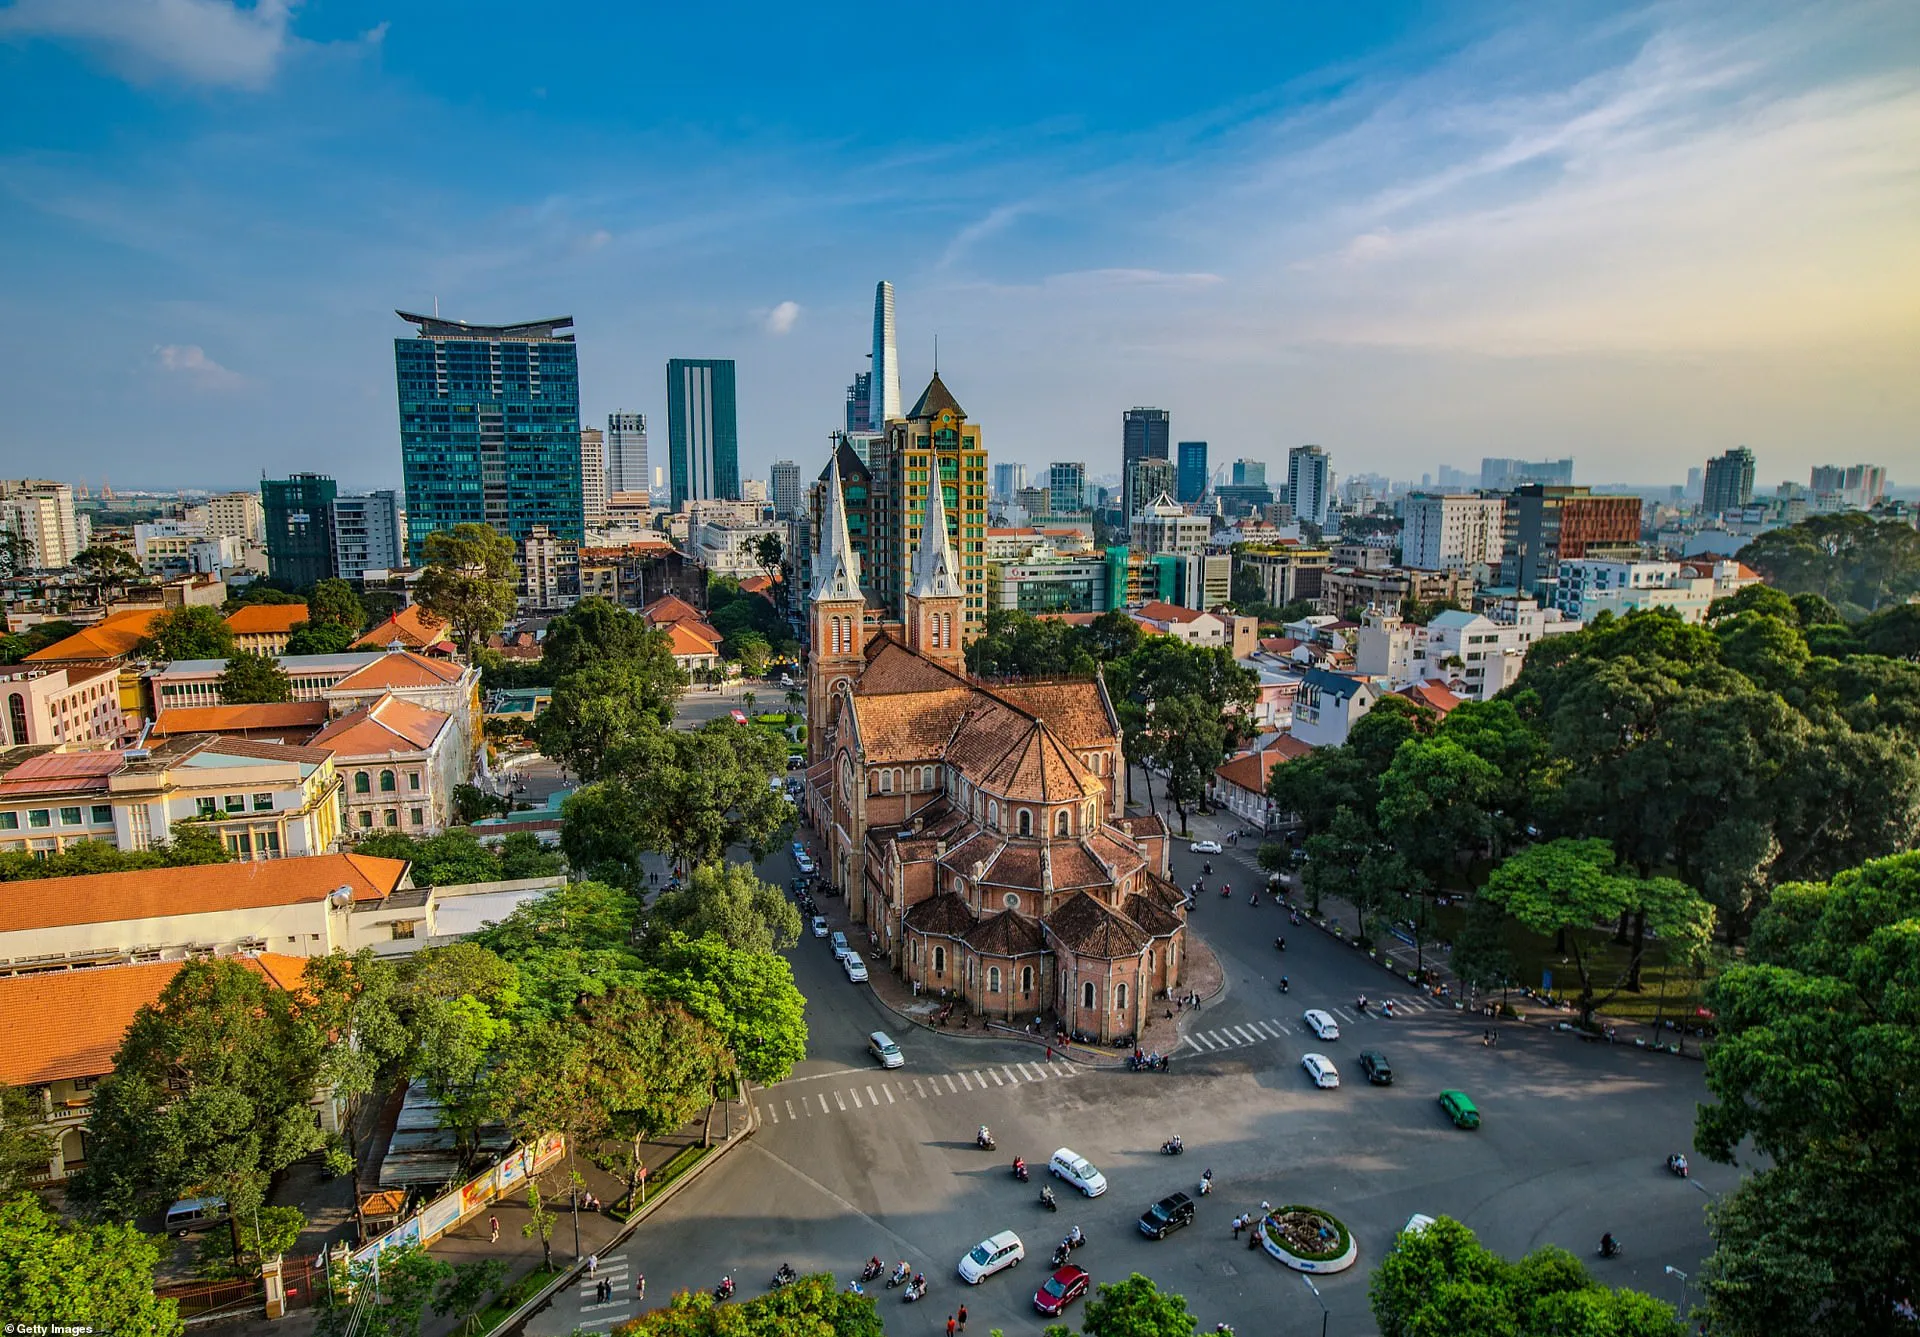 Nhà thờ chính tòa Đức Mẹ Vô nhiễm Nguyên tội nằm ở trung tâm Hồ Chí Minh. Trước đây được gọi là Sài Gòn, đó là nơi các tòa tháp tương lai hòa quyện với các tòa nhà trang nhã của thời kỳ thuộc địa Pháp, được tẩm ướp với khối lượng lớn các cây lau nhà